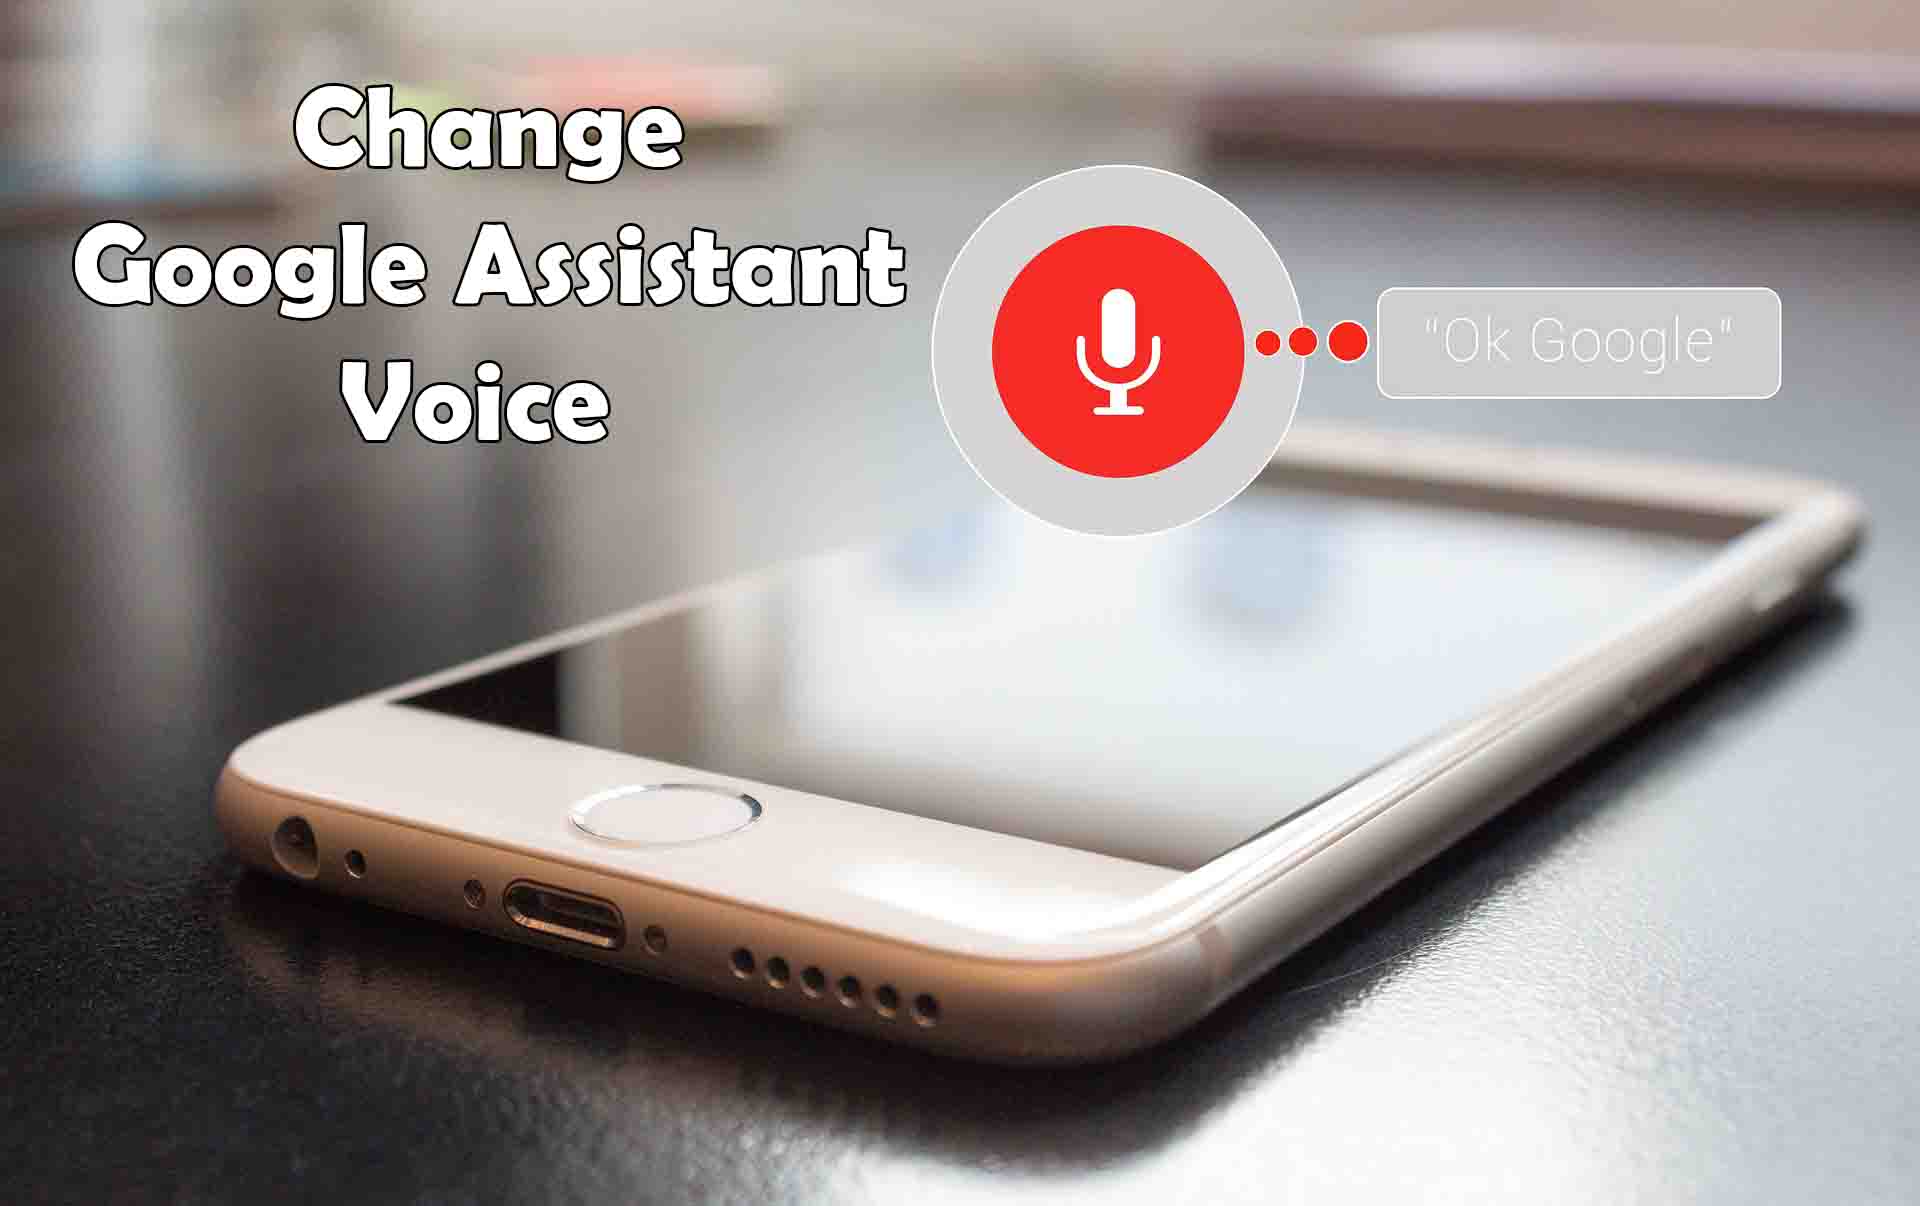 Change Google Assistant Voice